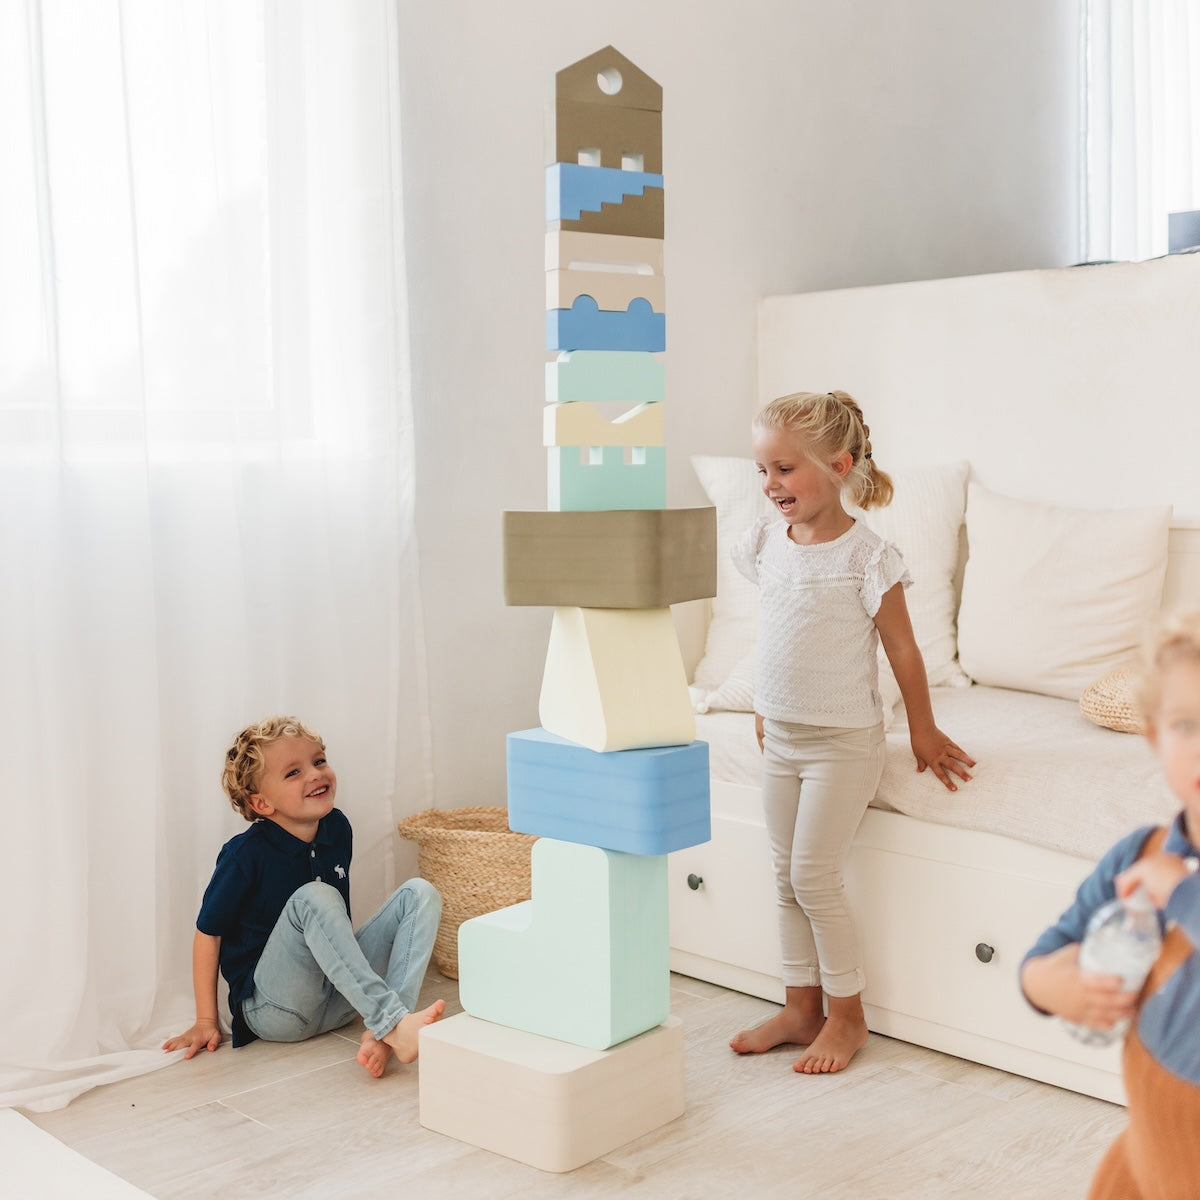 Met het Moes Play Square sky speelblok leert je kindje creatief spelen en wordt de motoriek op een originele manier gestimuleerd. Het speelblok is multifunctioneel en kan op verschillende manieren worden gebruikt om mee te spelen. VanZus